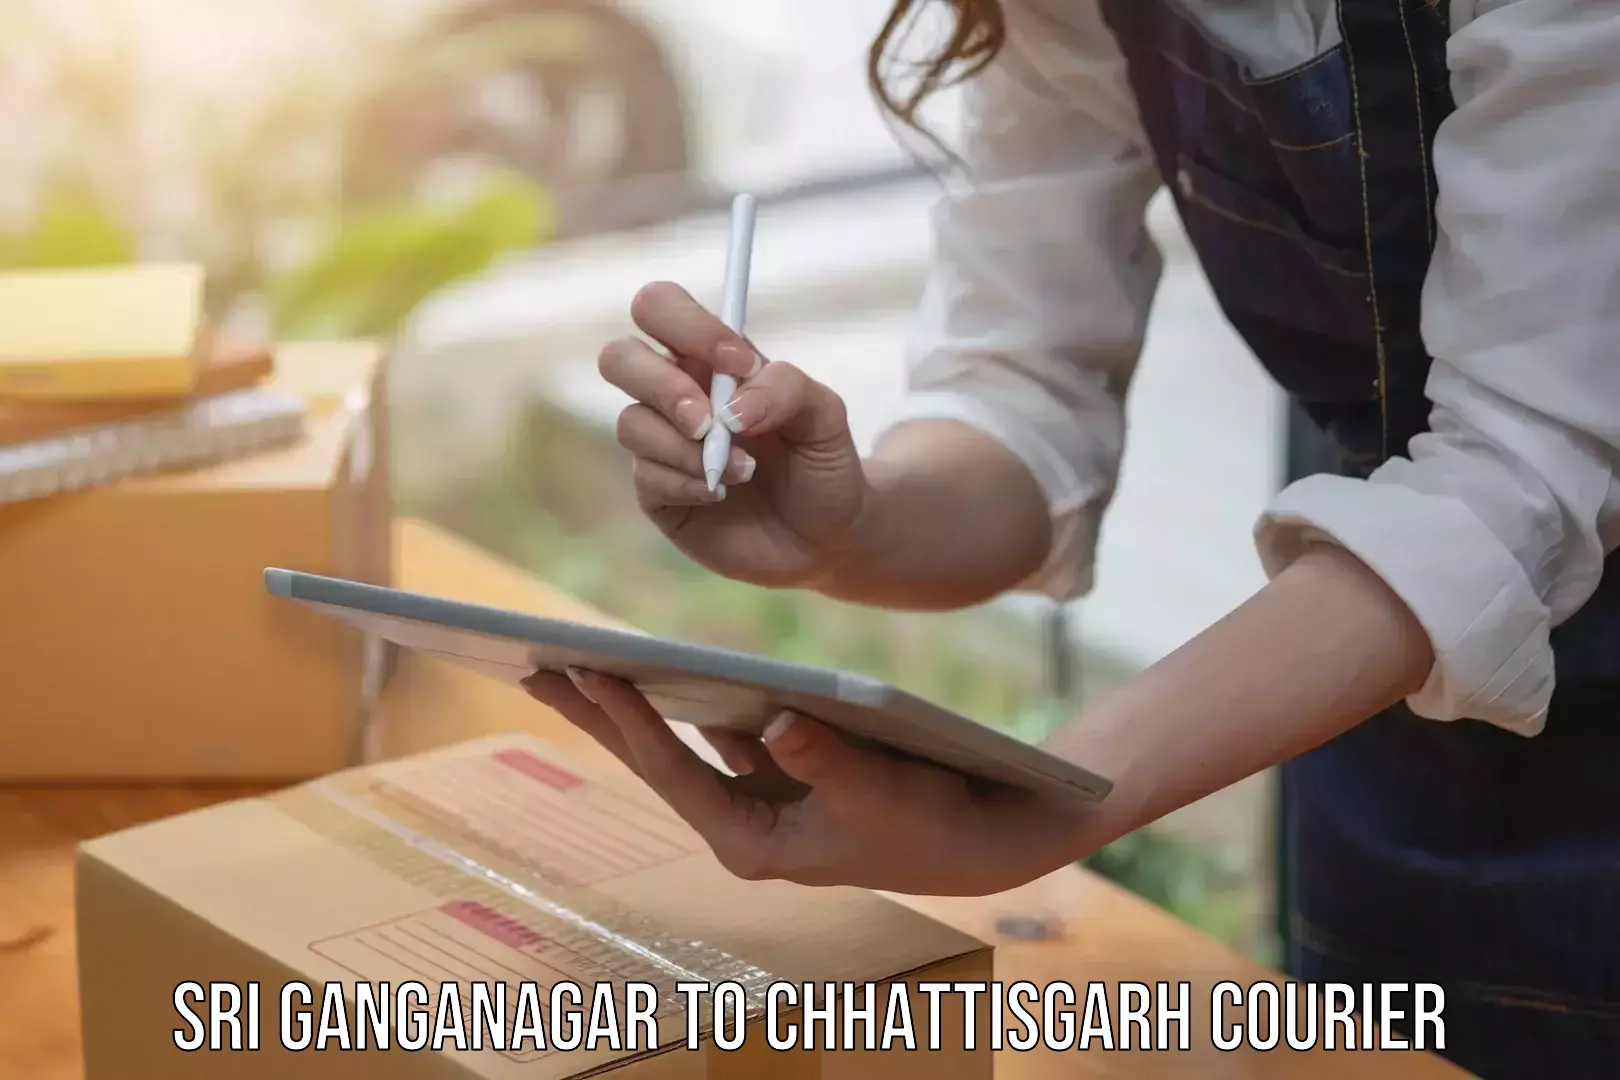 Courier service partnerships Sri Ganganagar to Berla